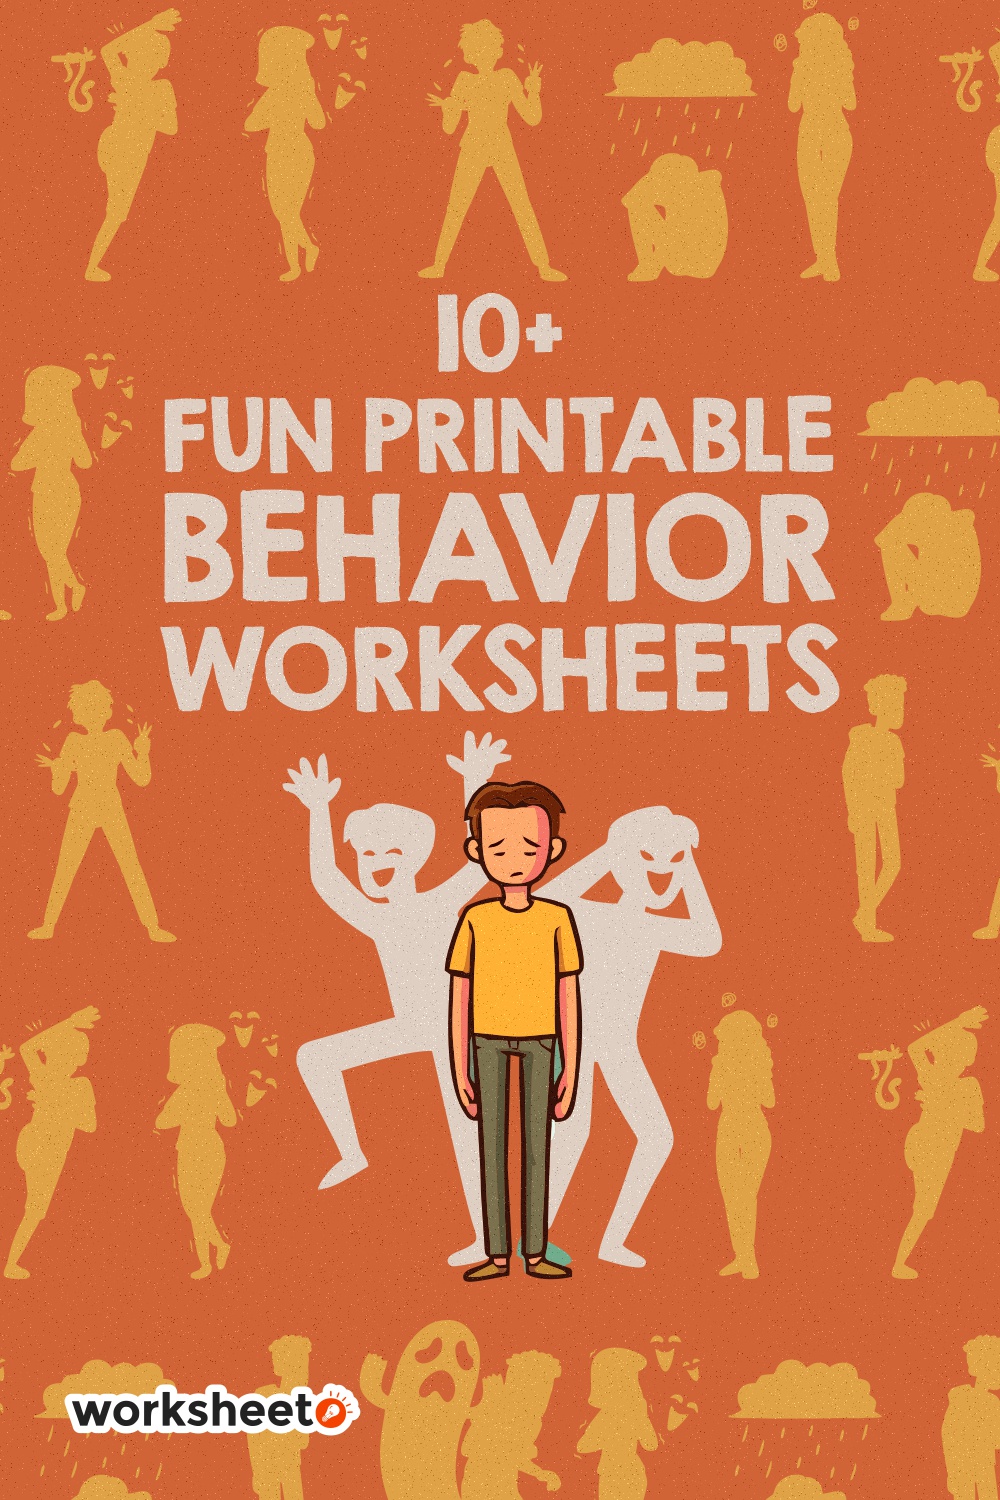 Fun Printable Behavior Worksheets